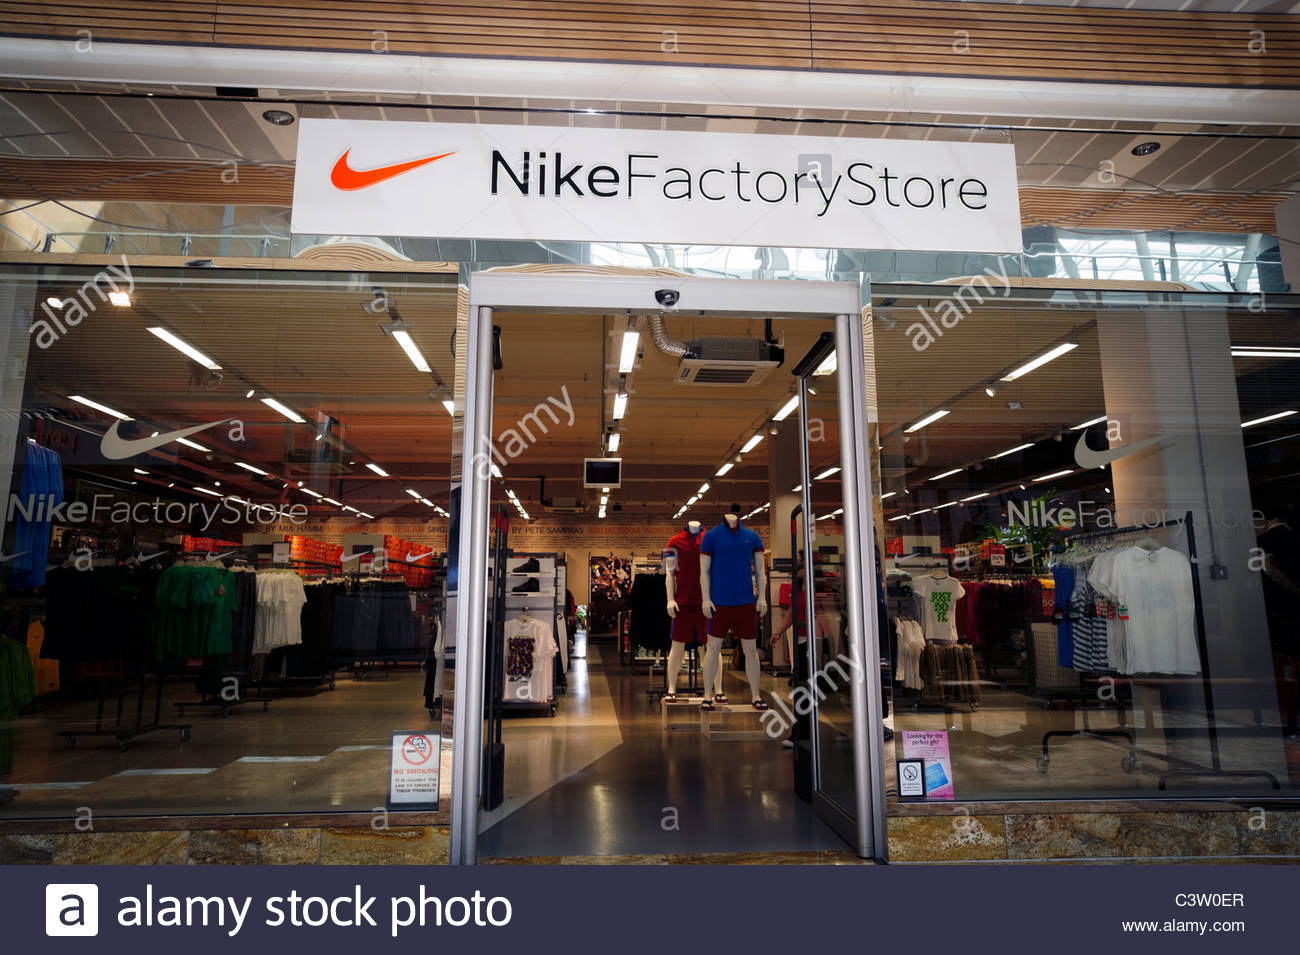 Nike factory shop Gloucester Quays, UK Stock Photo, Royalty Free Image: 36813919 - Alamy